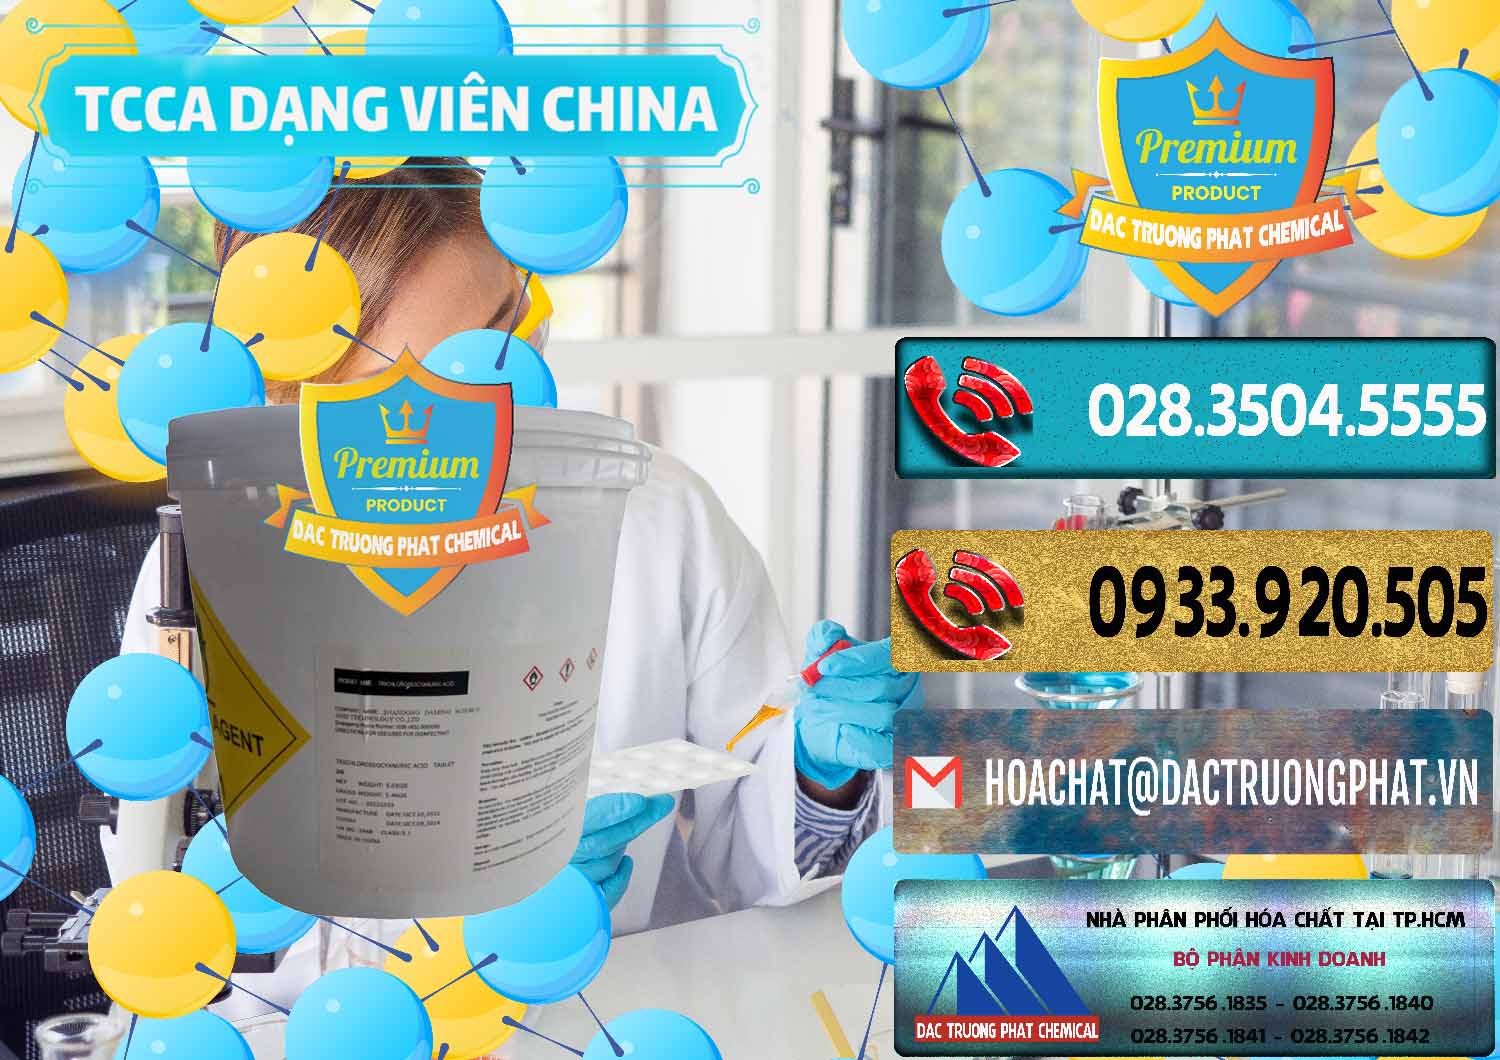 Nơi cung cấp _ bán TCCA - Acid Trichloroisocyanuric Dạng Viên Thùng 5kg Trung Quốc China - 0379 - Cty chuyên kinh doanh & phân phối hóa chất tại TP.HCM - hoachatdetnhuom.com